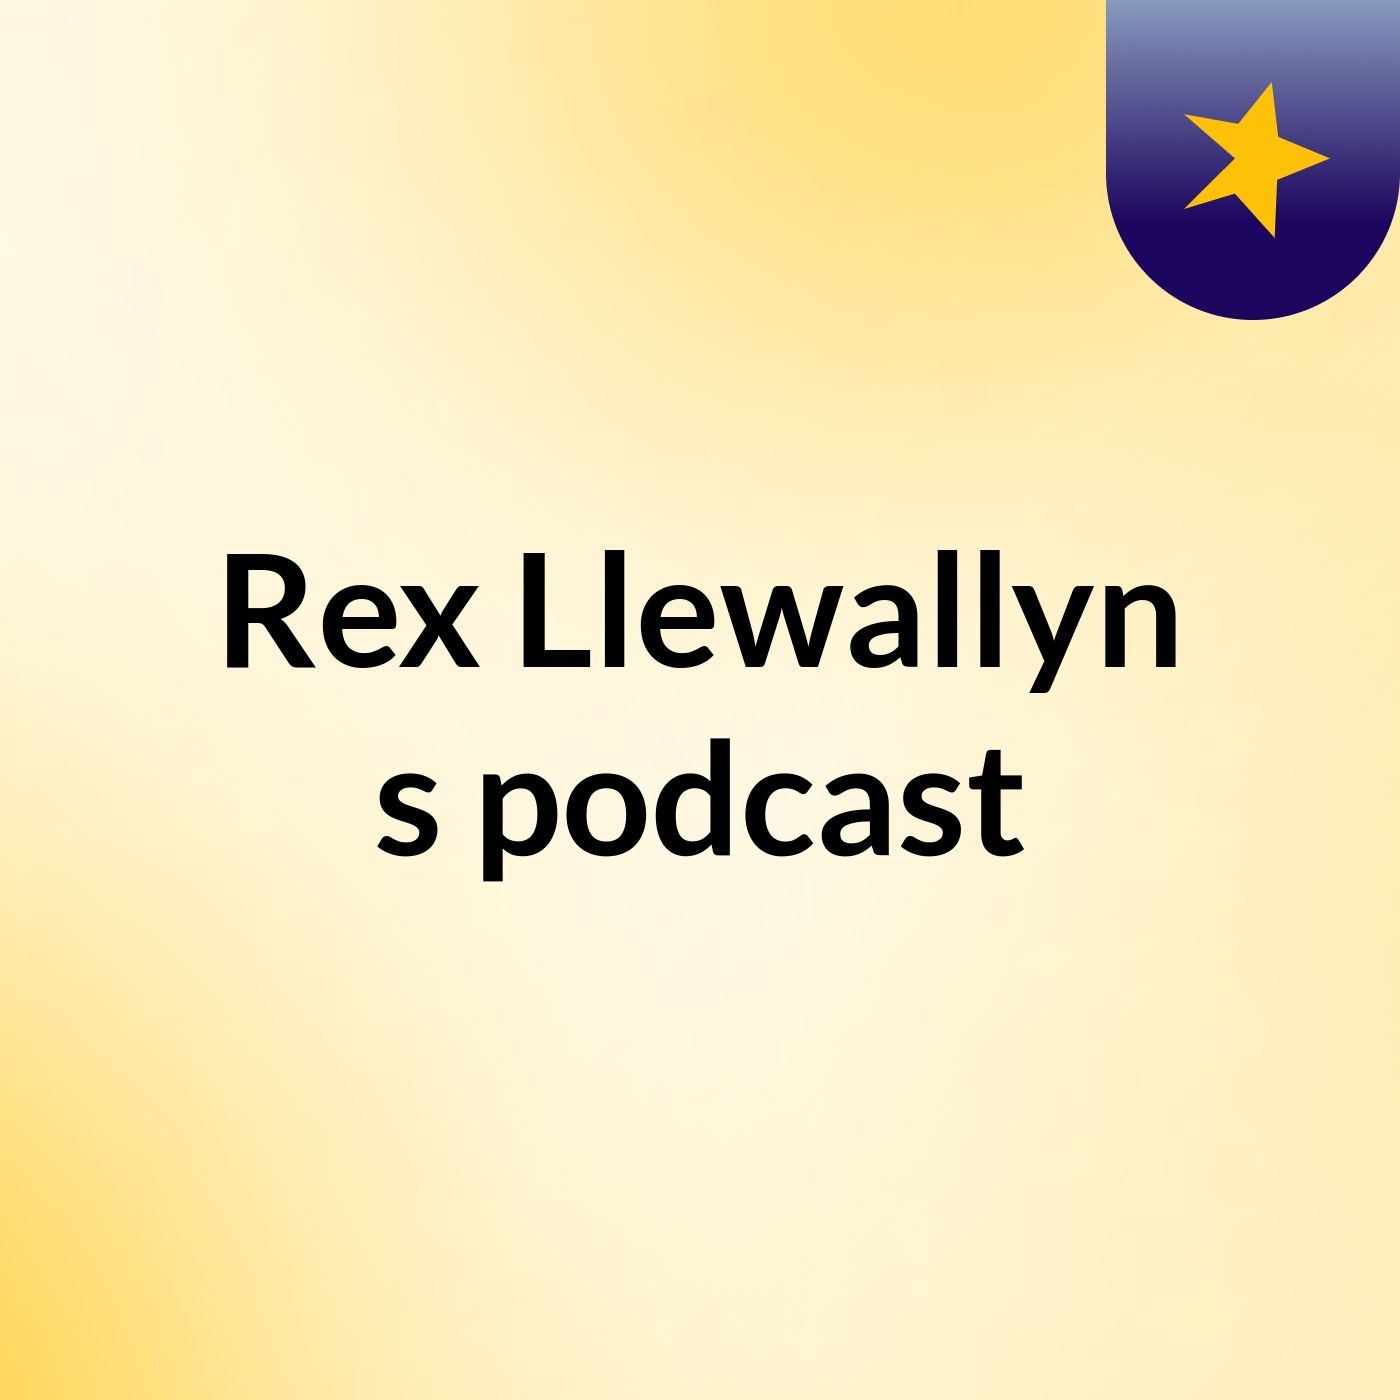 Rex Llewallyn's podcast